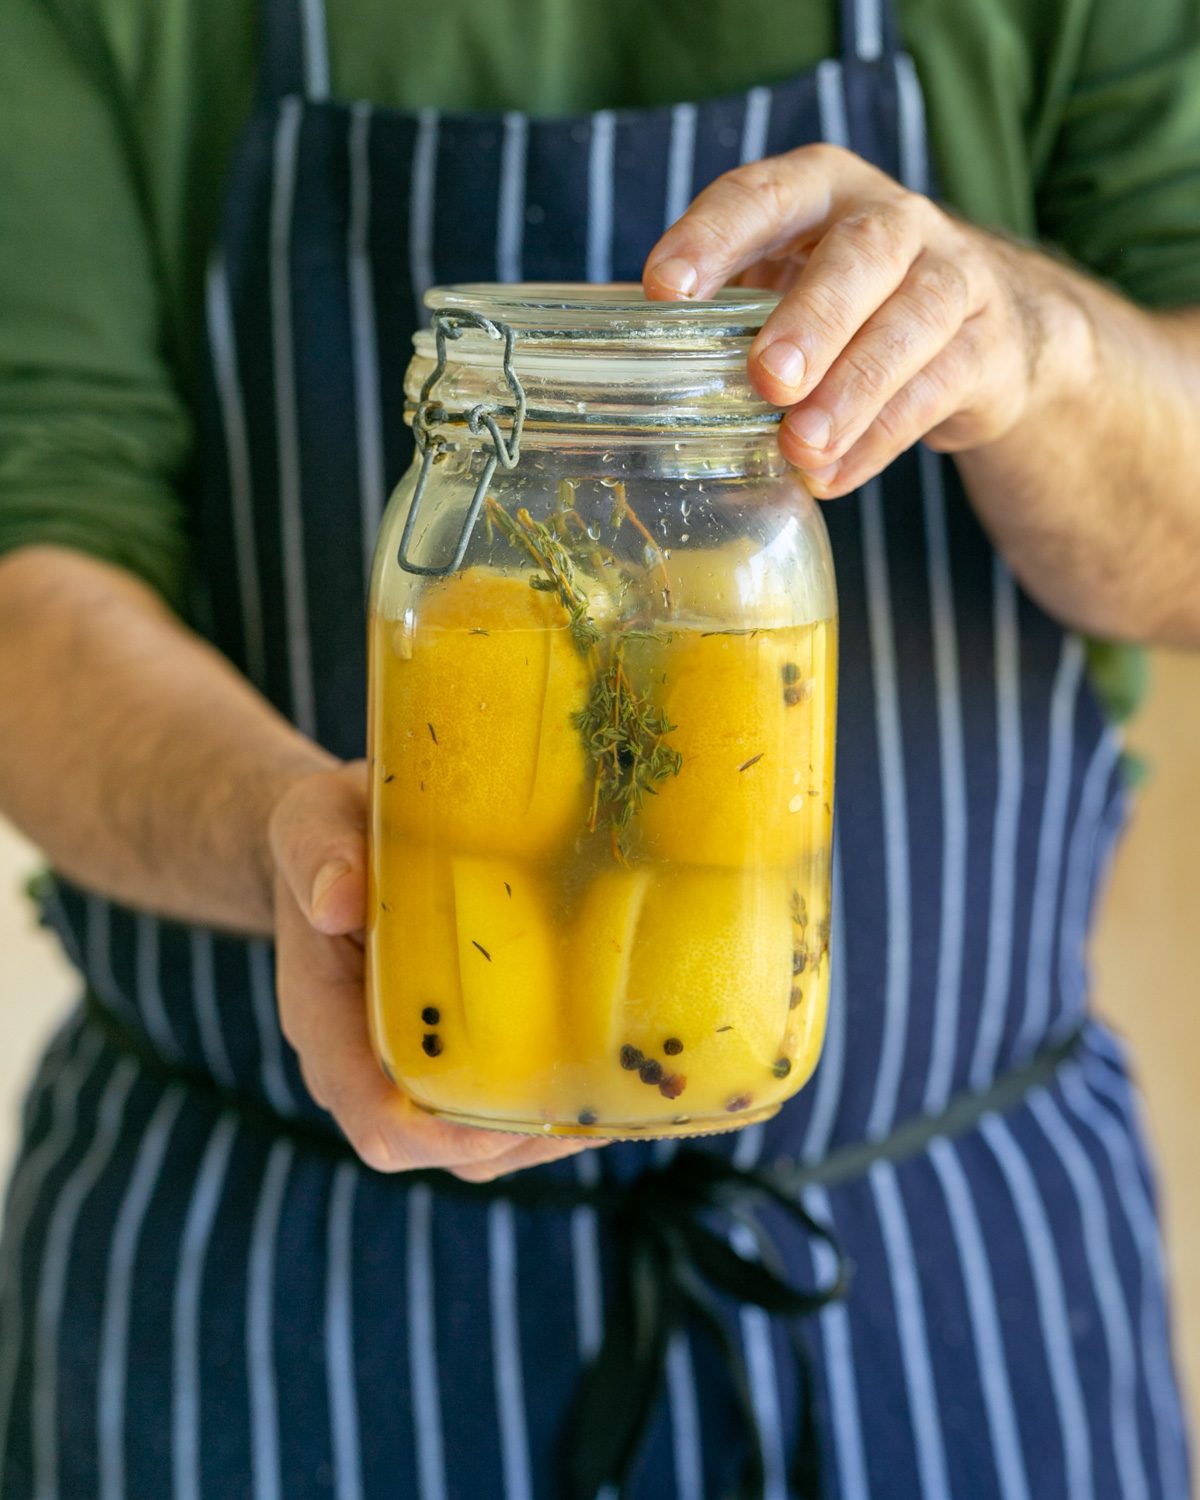 Curing lemons in a jar